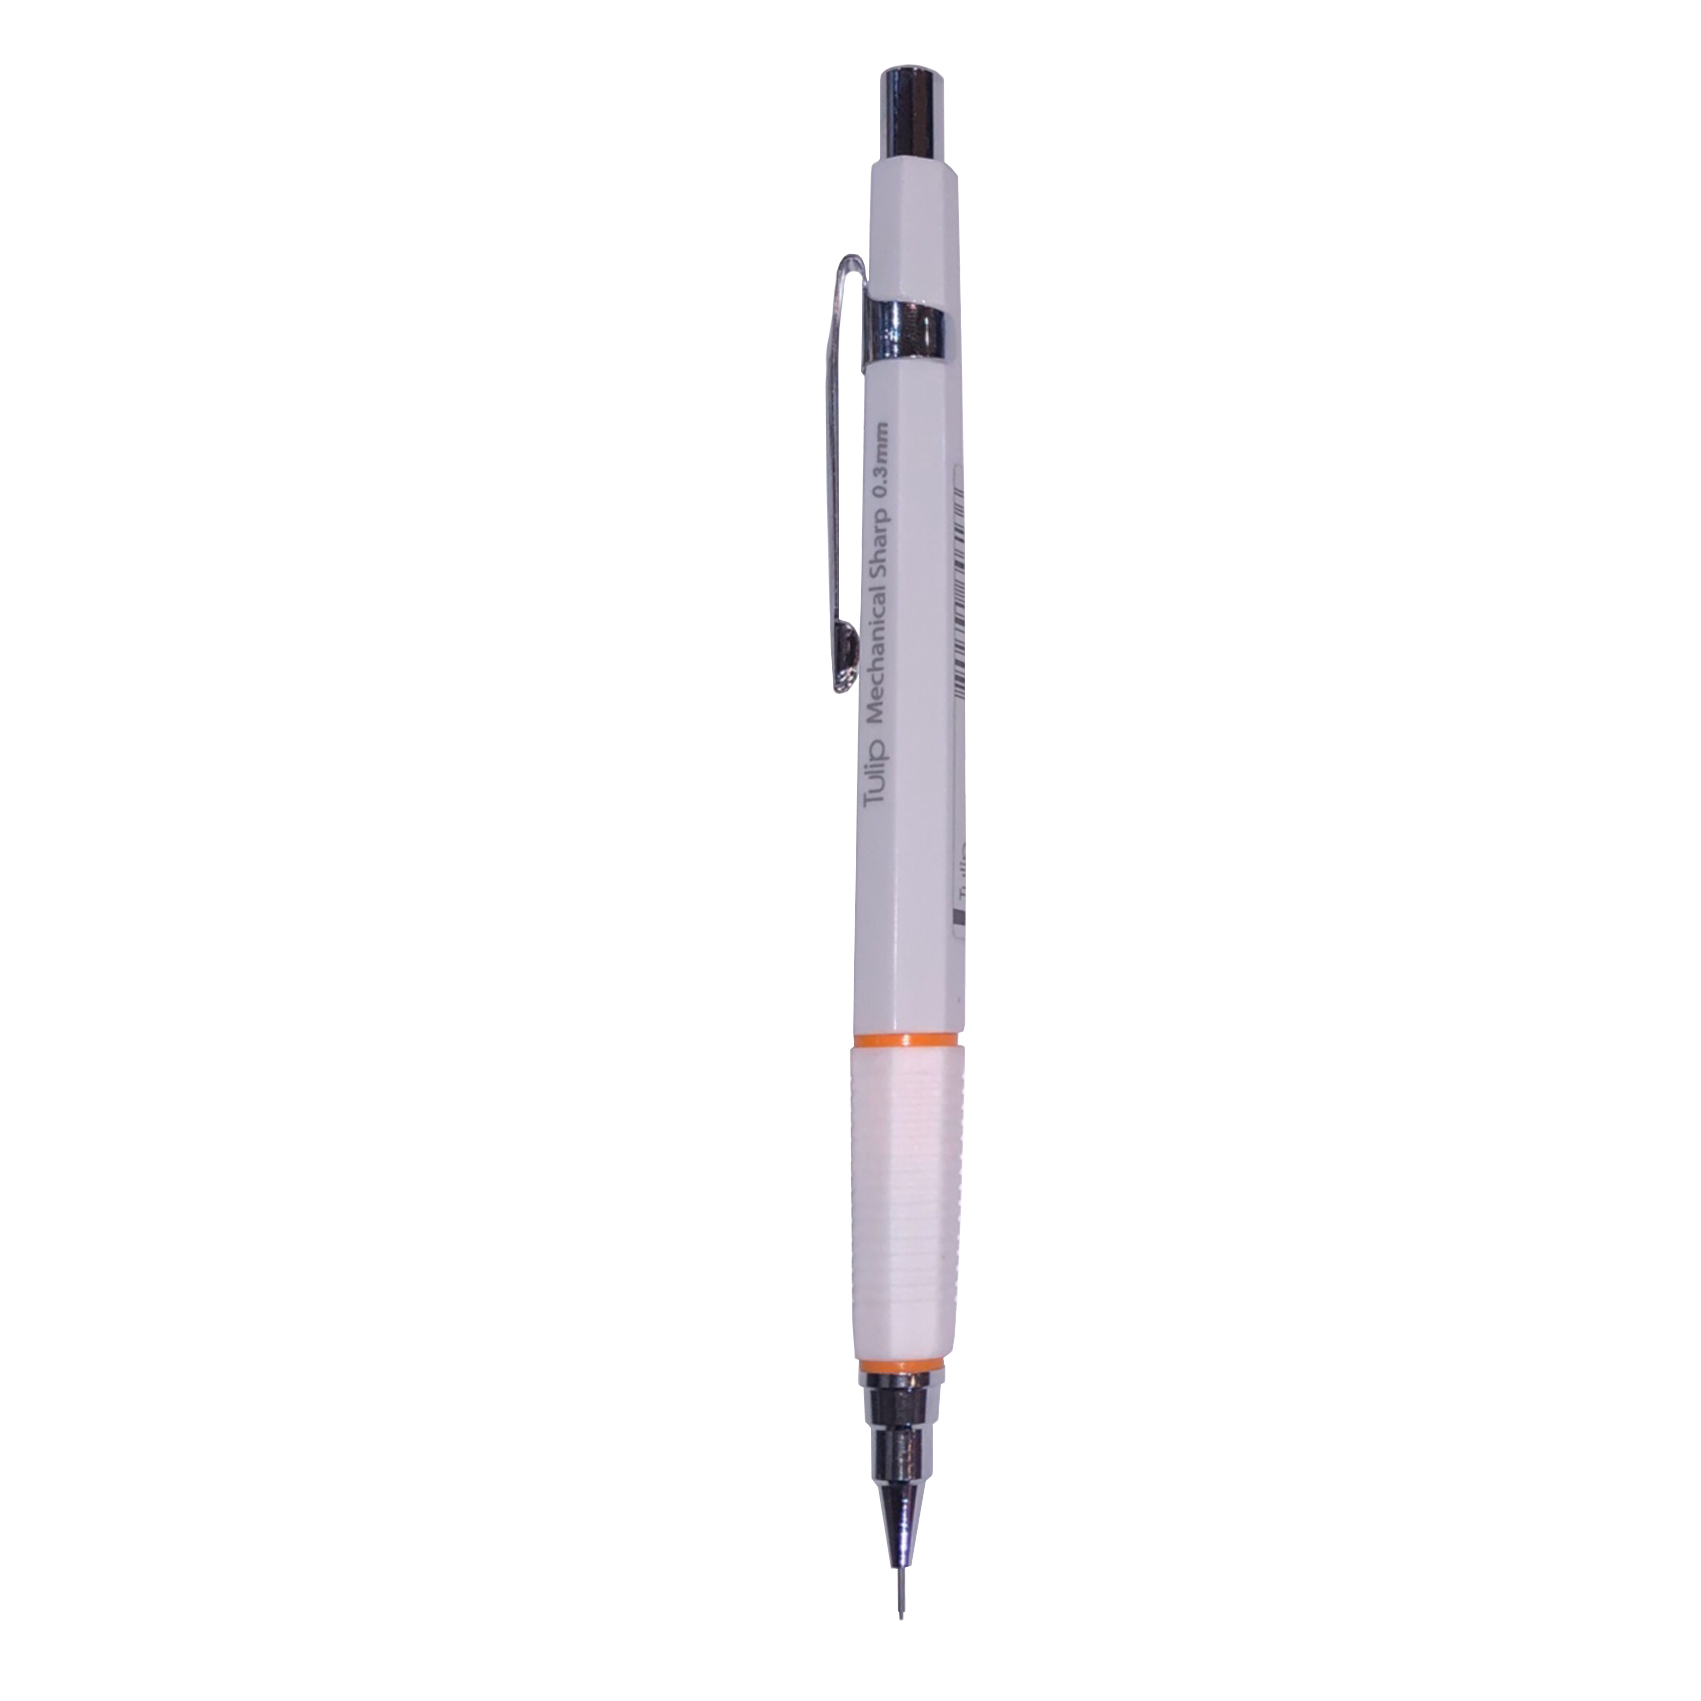 مداد نوکی 0.3 میلیمتری تولیپ مدل Mechanical کد 58